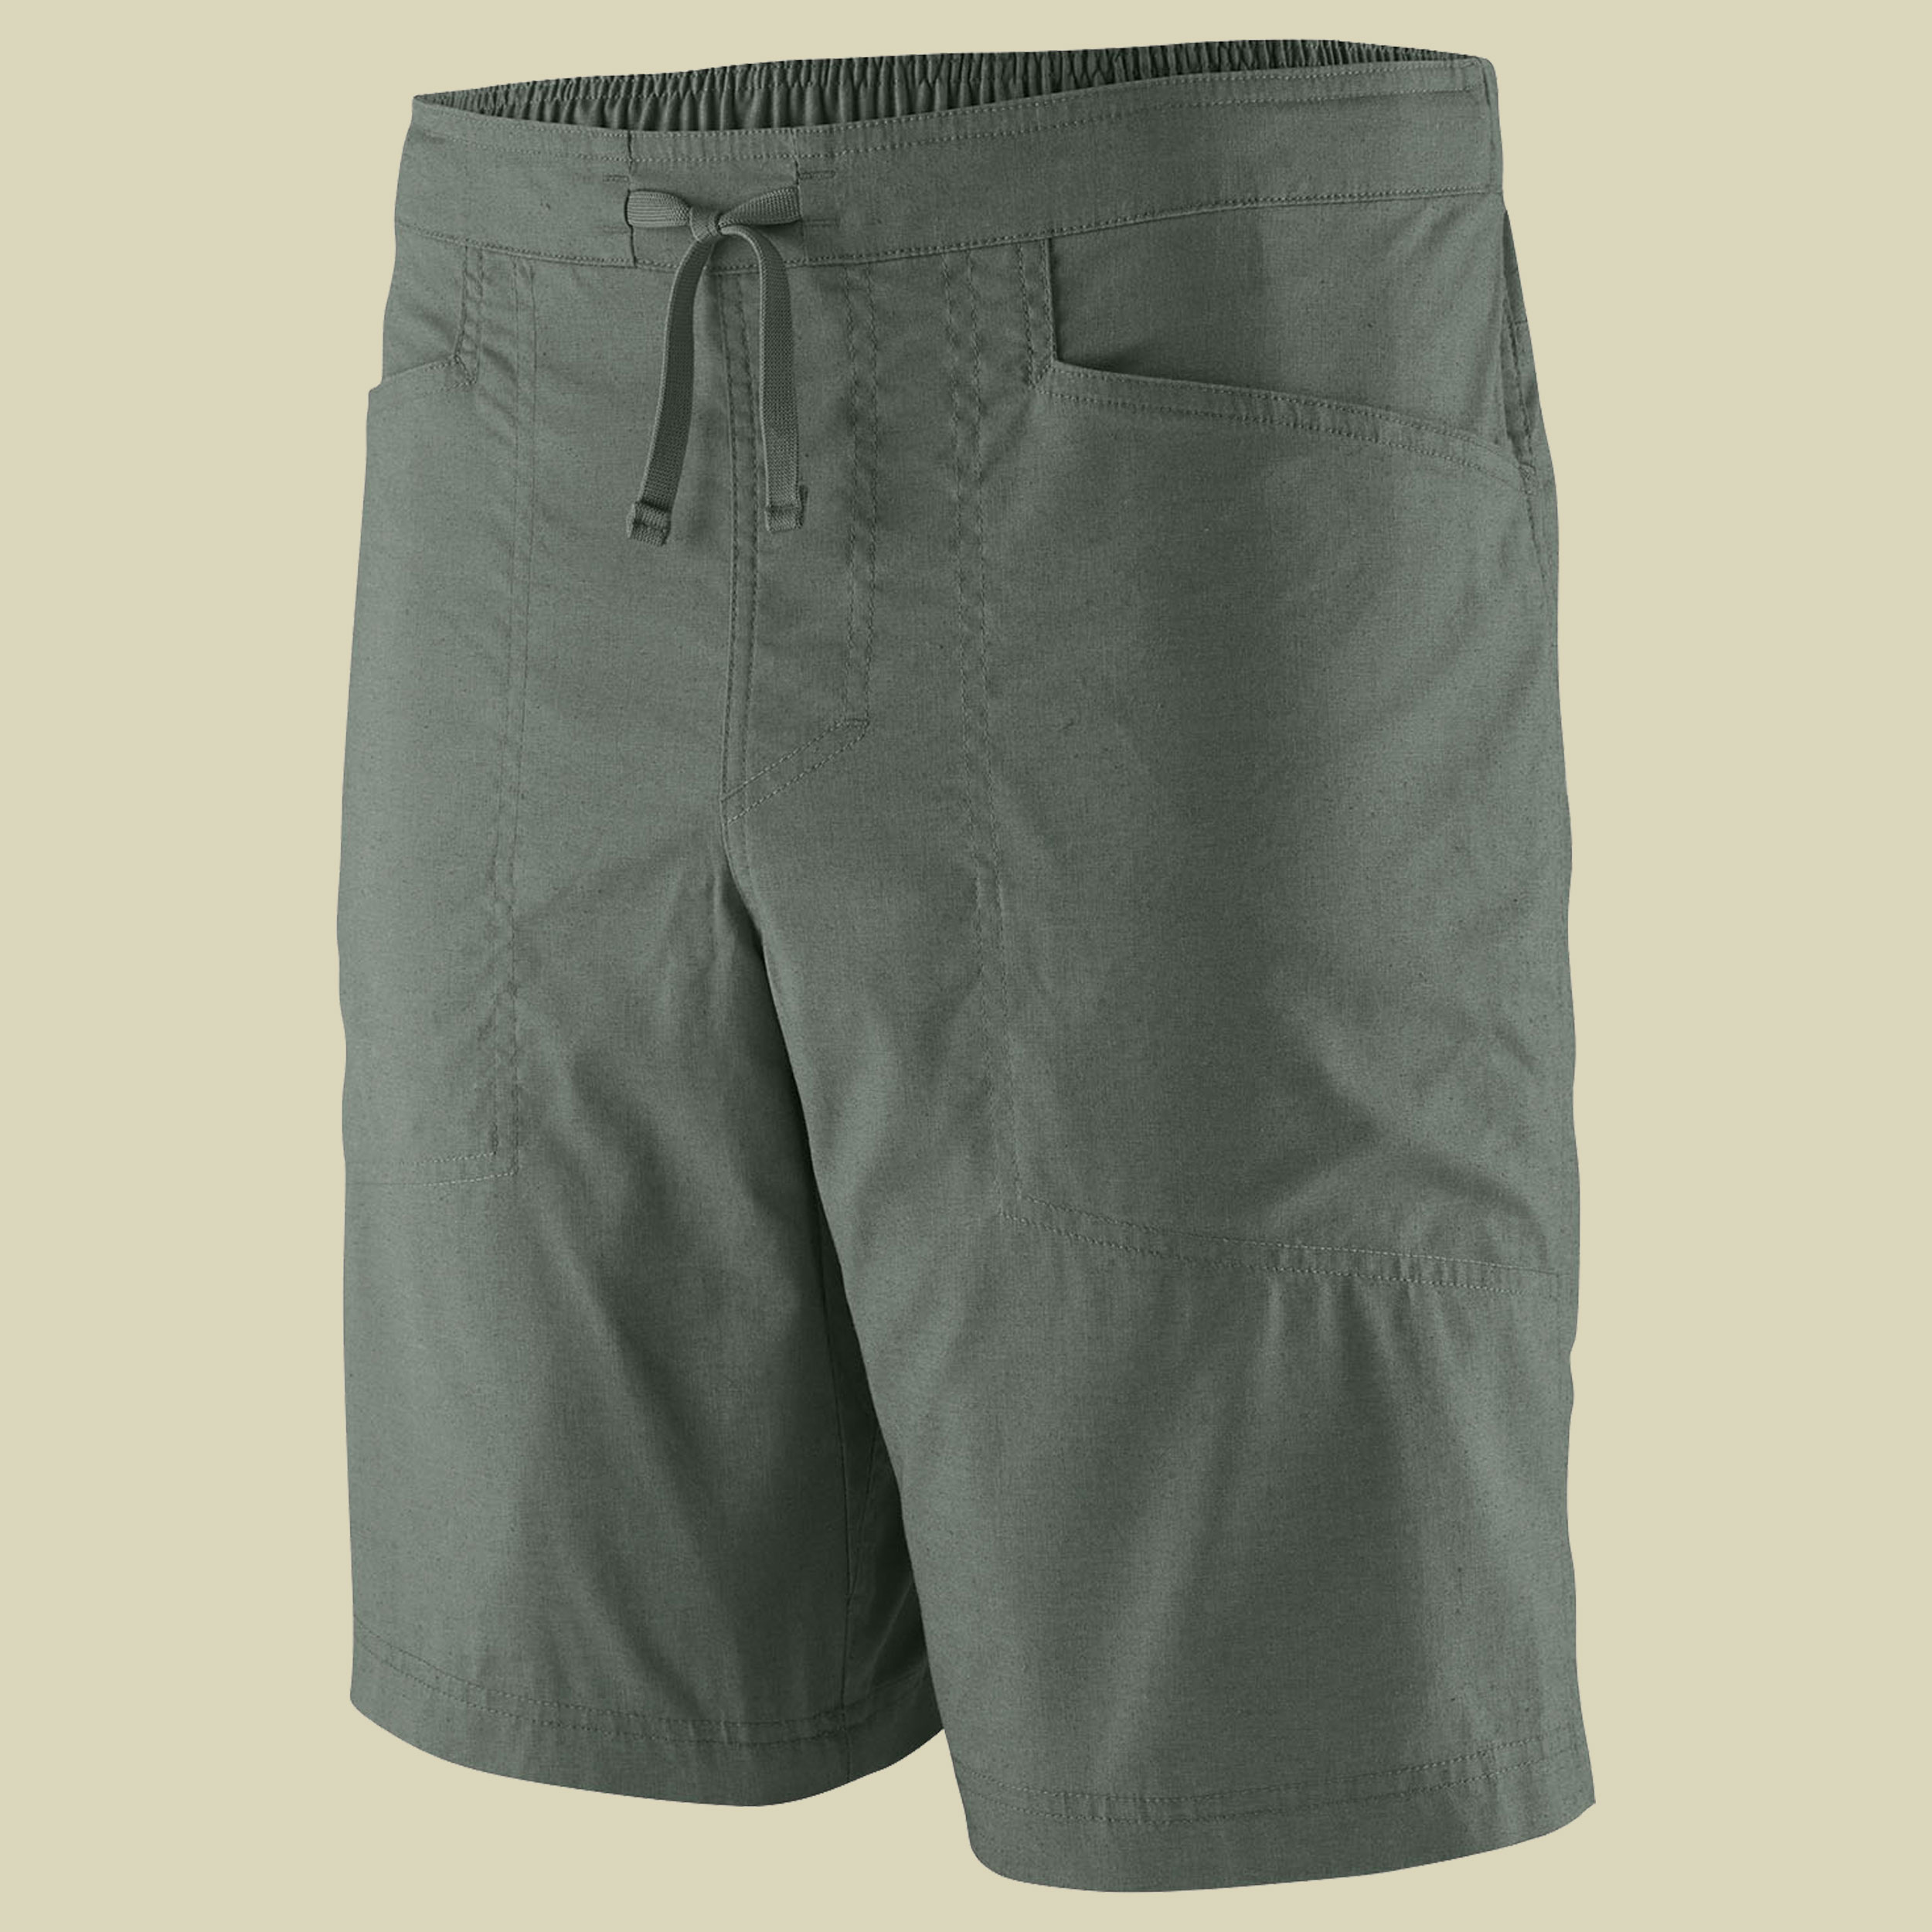 Hampi Rock Shorts Men Größe 34 Farbe hemlock green